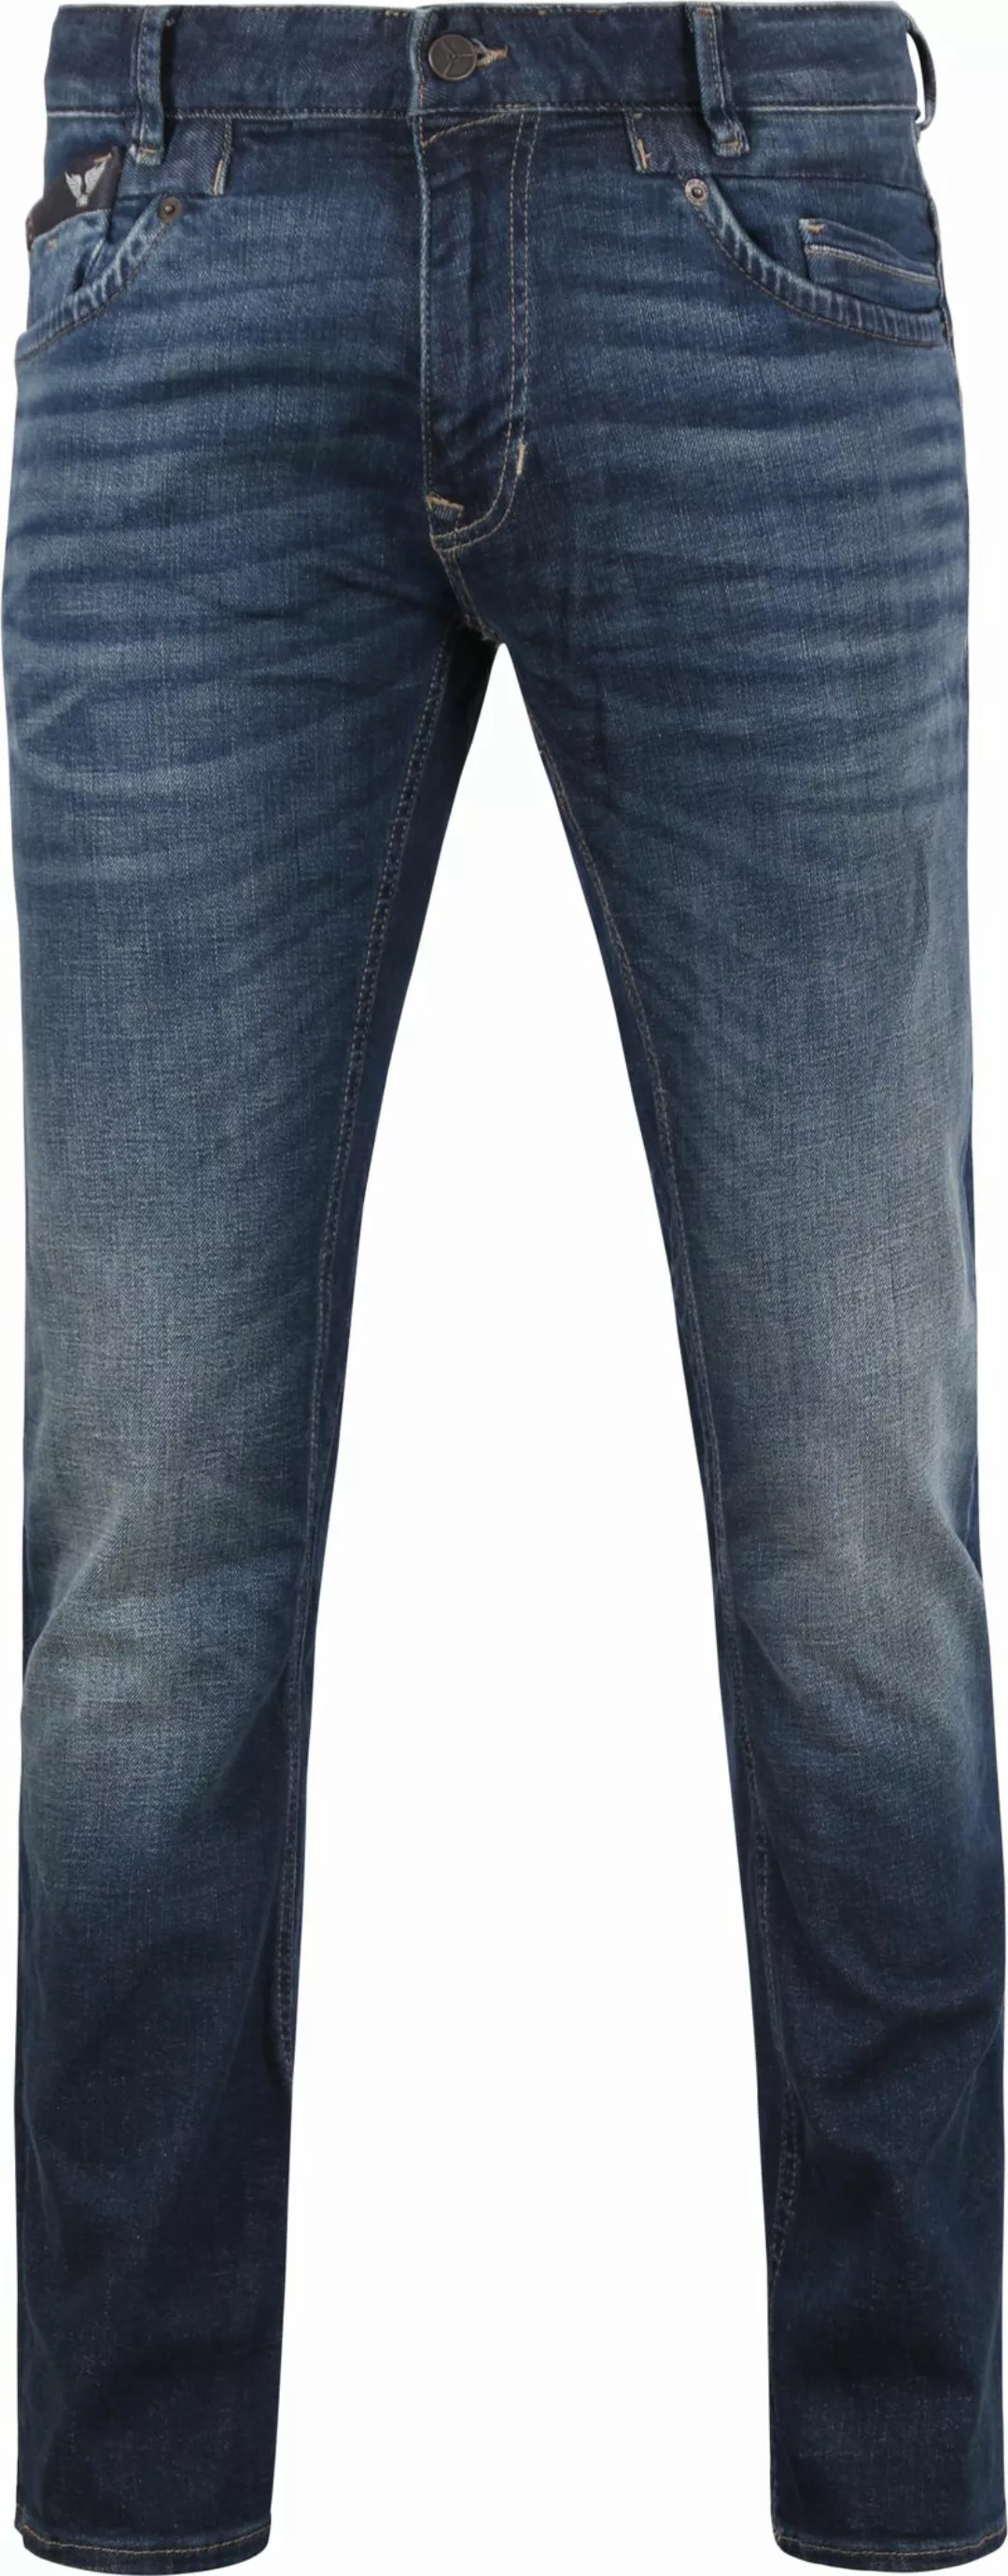 PME Legend Commander 3.0 Jeans Blau DBF - Größe W 35 - L 34 günstig online kaufen